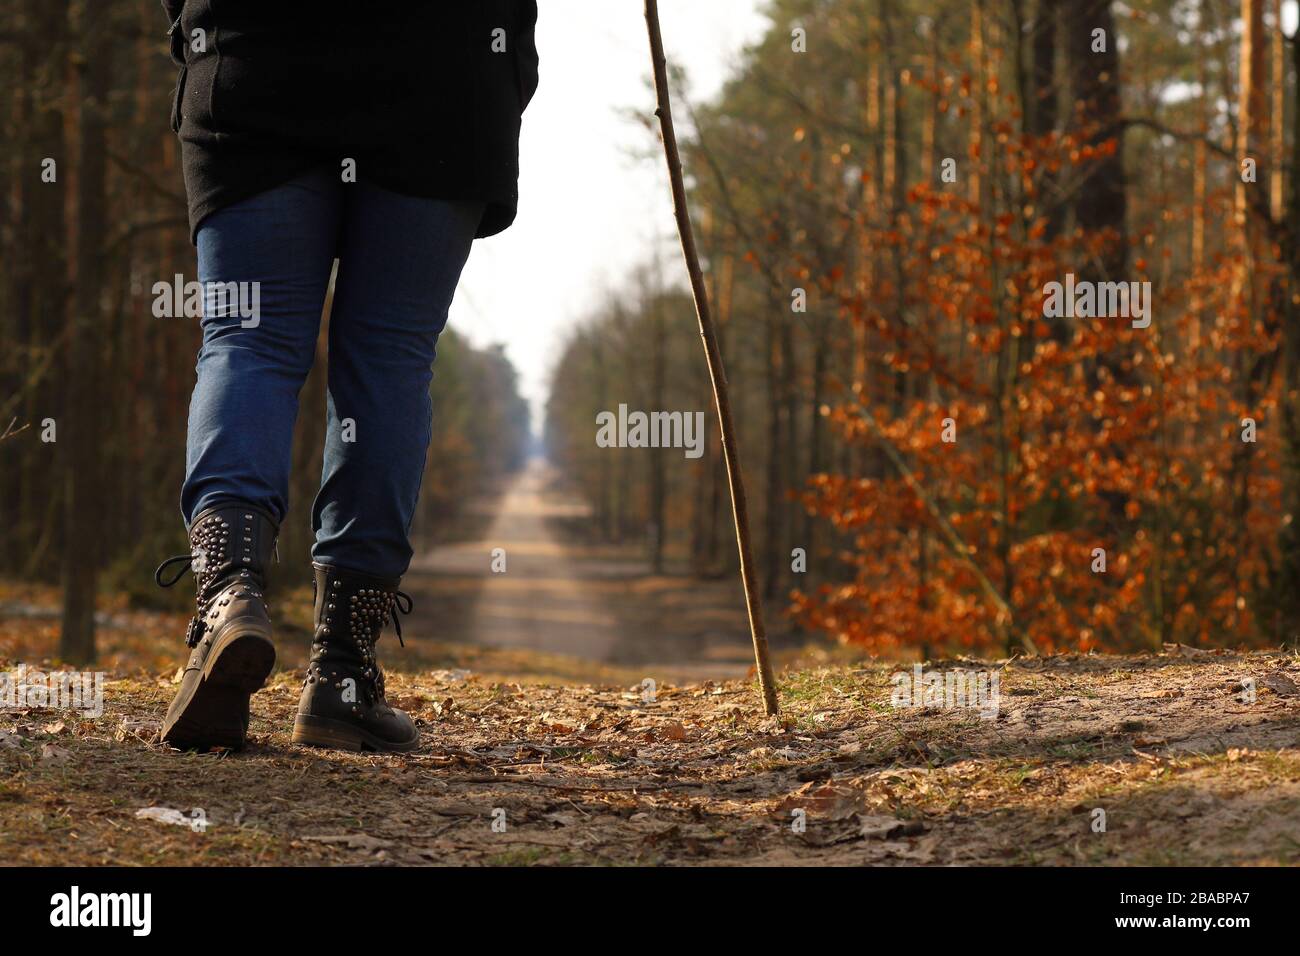 donna in una passeggiata nel bosco, uomo in una passeggiata Foto Stock